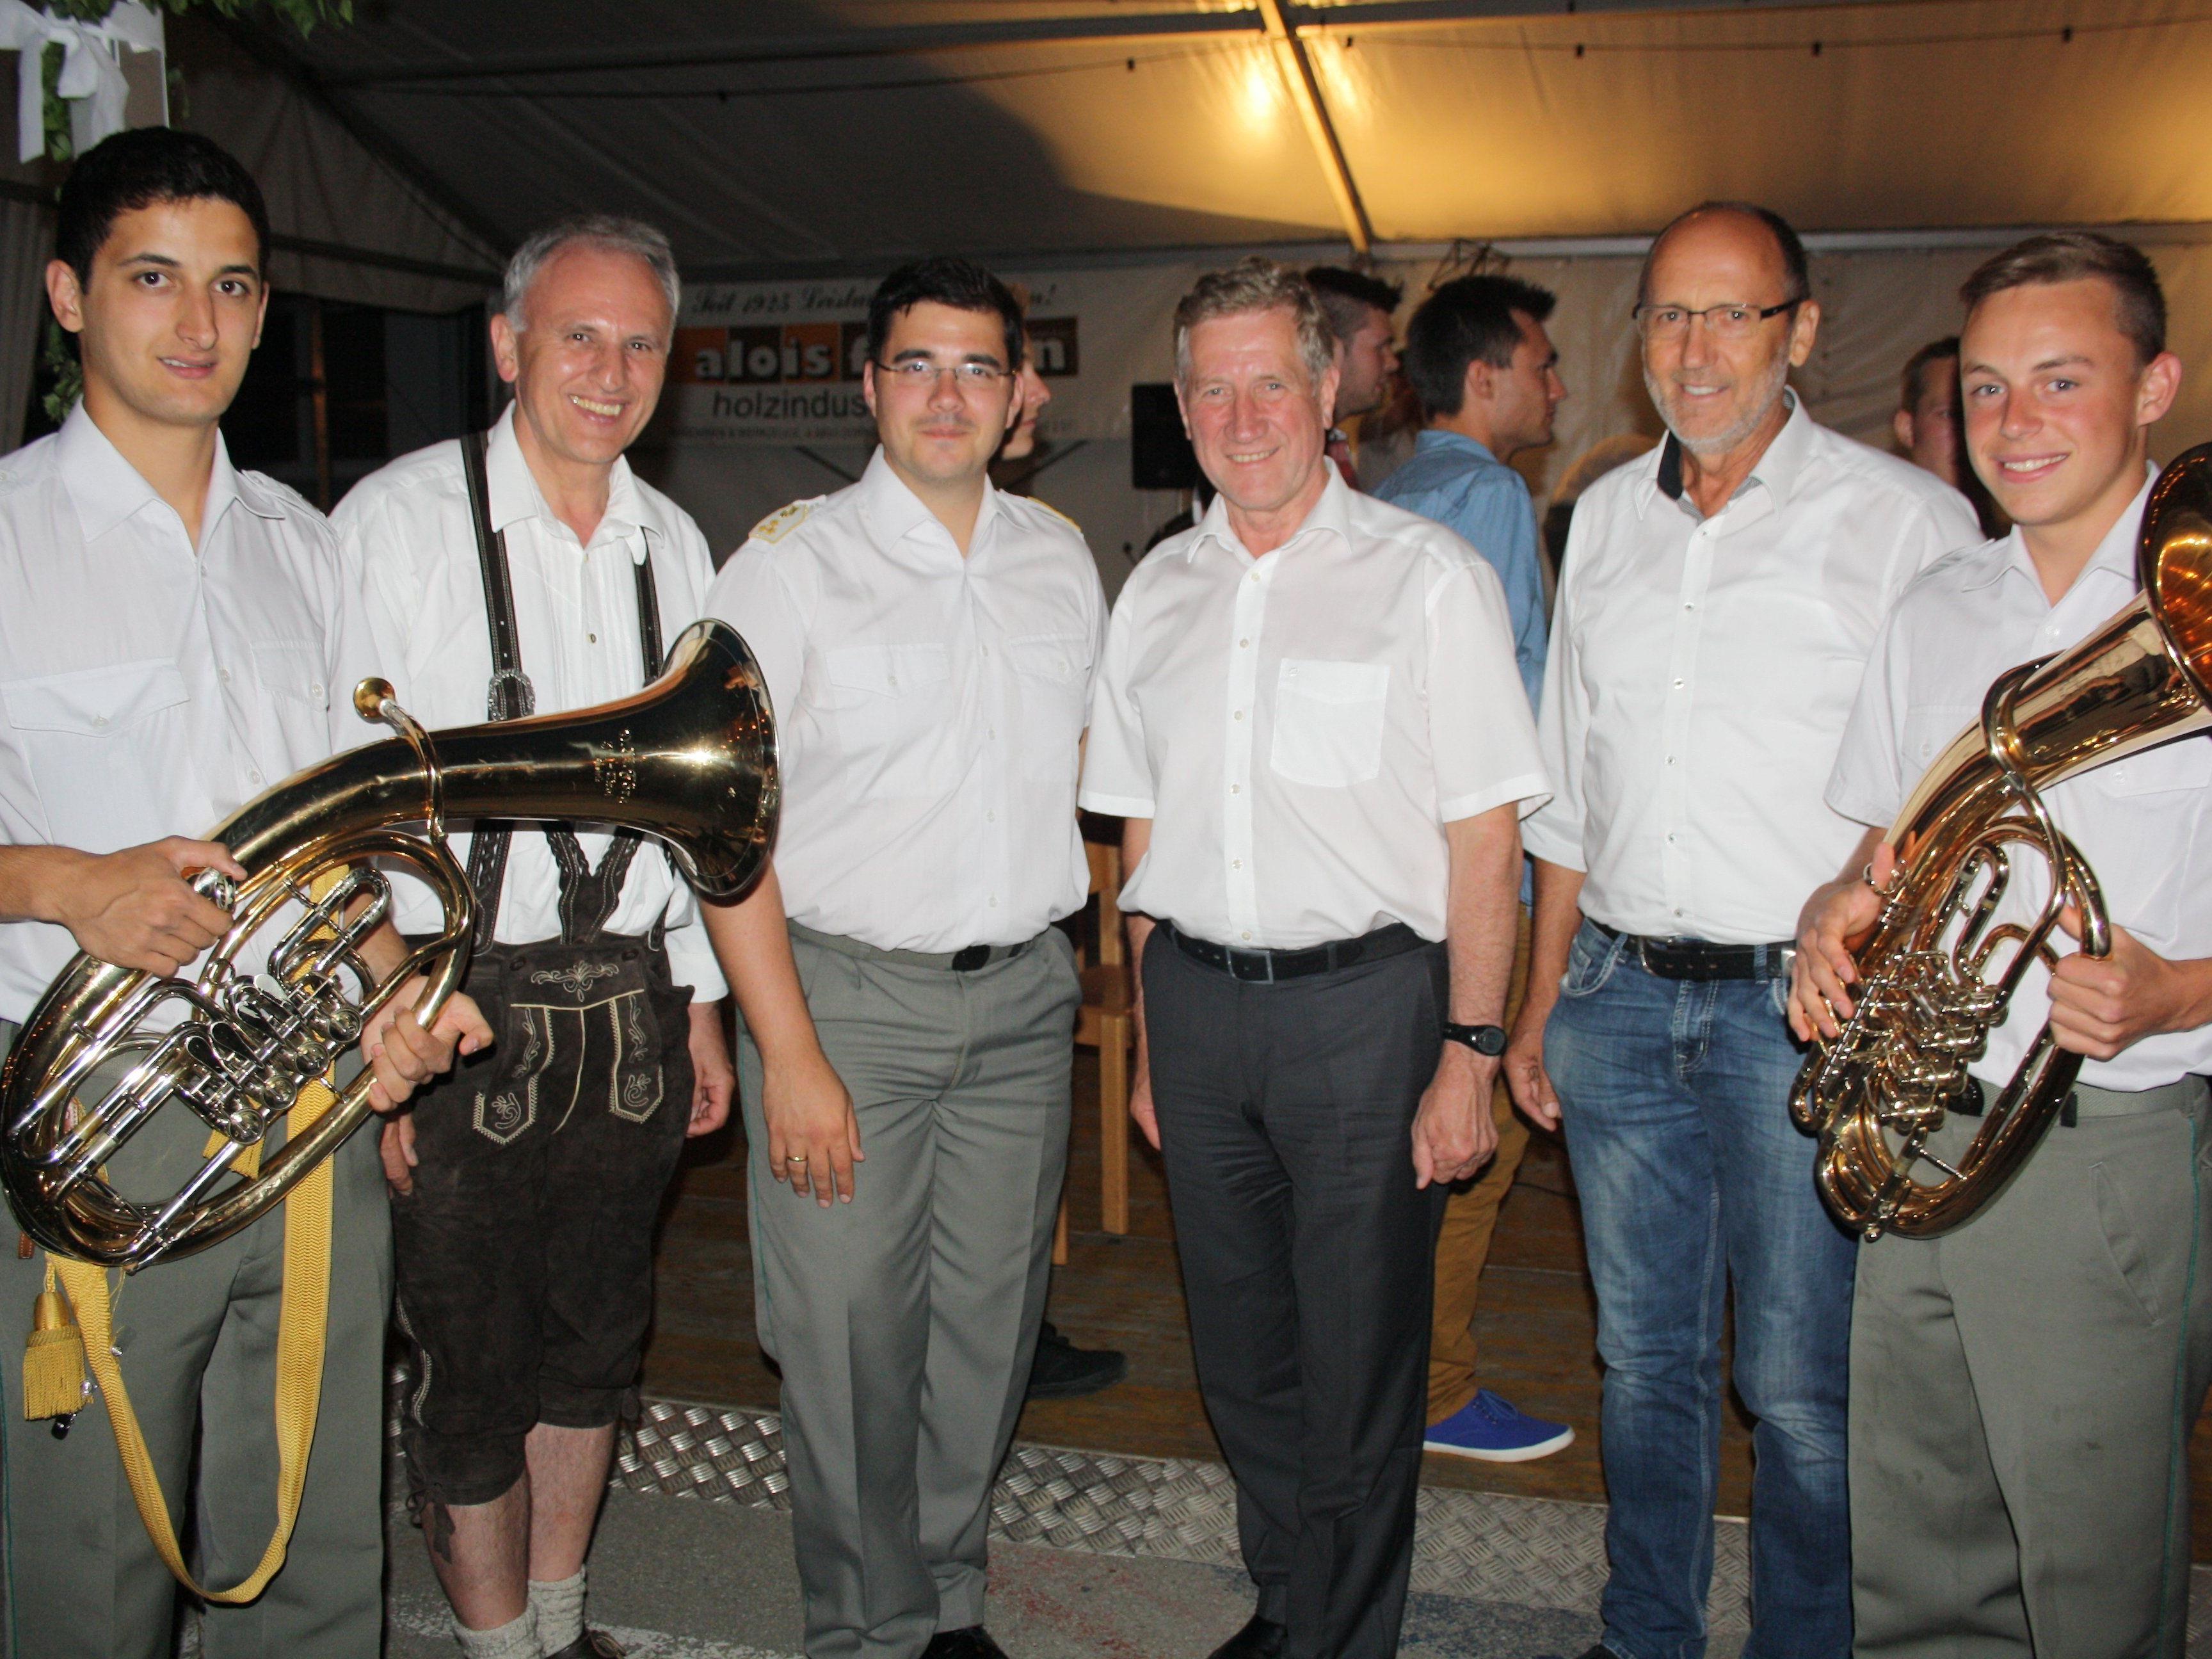 Sie freuten sich über ein bestens gelungenen Sommerkonzert: Landesrat Erich Schwärzler, Kapellmeister Hauptmann Wolfram Öller, Bürgermeister Xaver Sinz und VBV-Obmann Wolfram Baldauf.